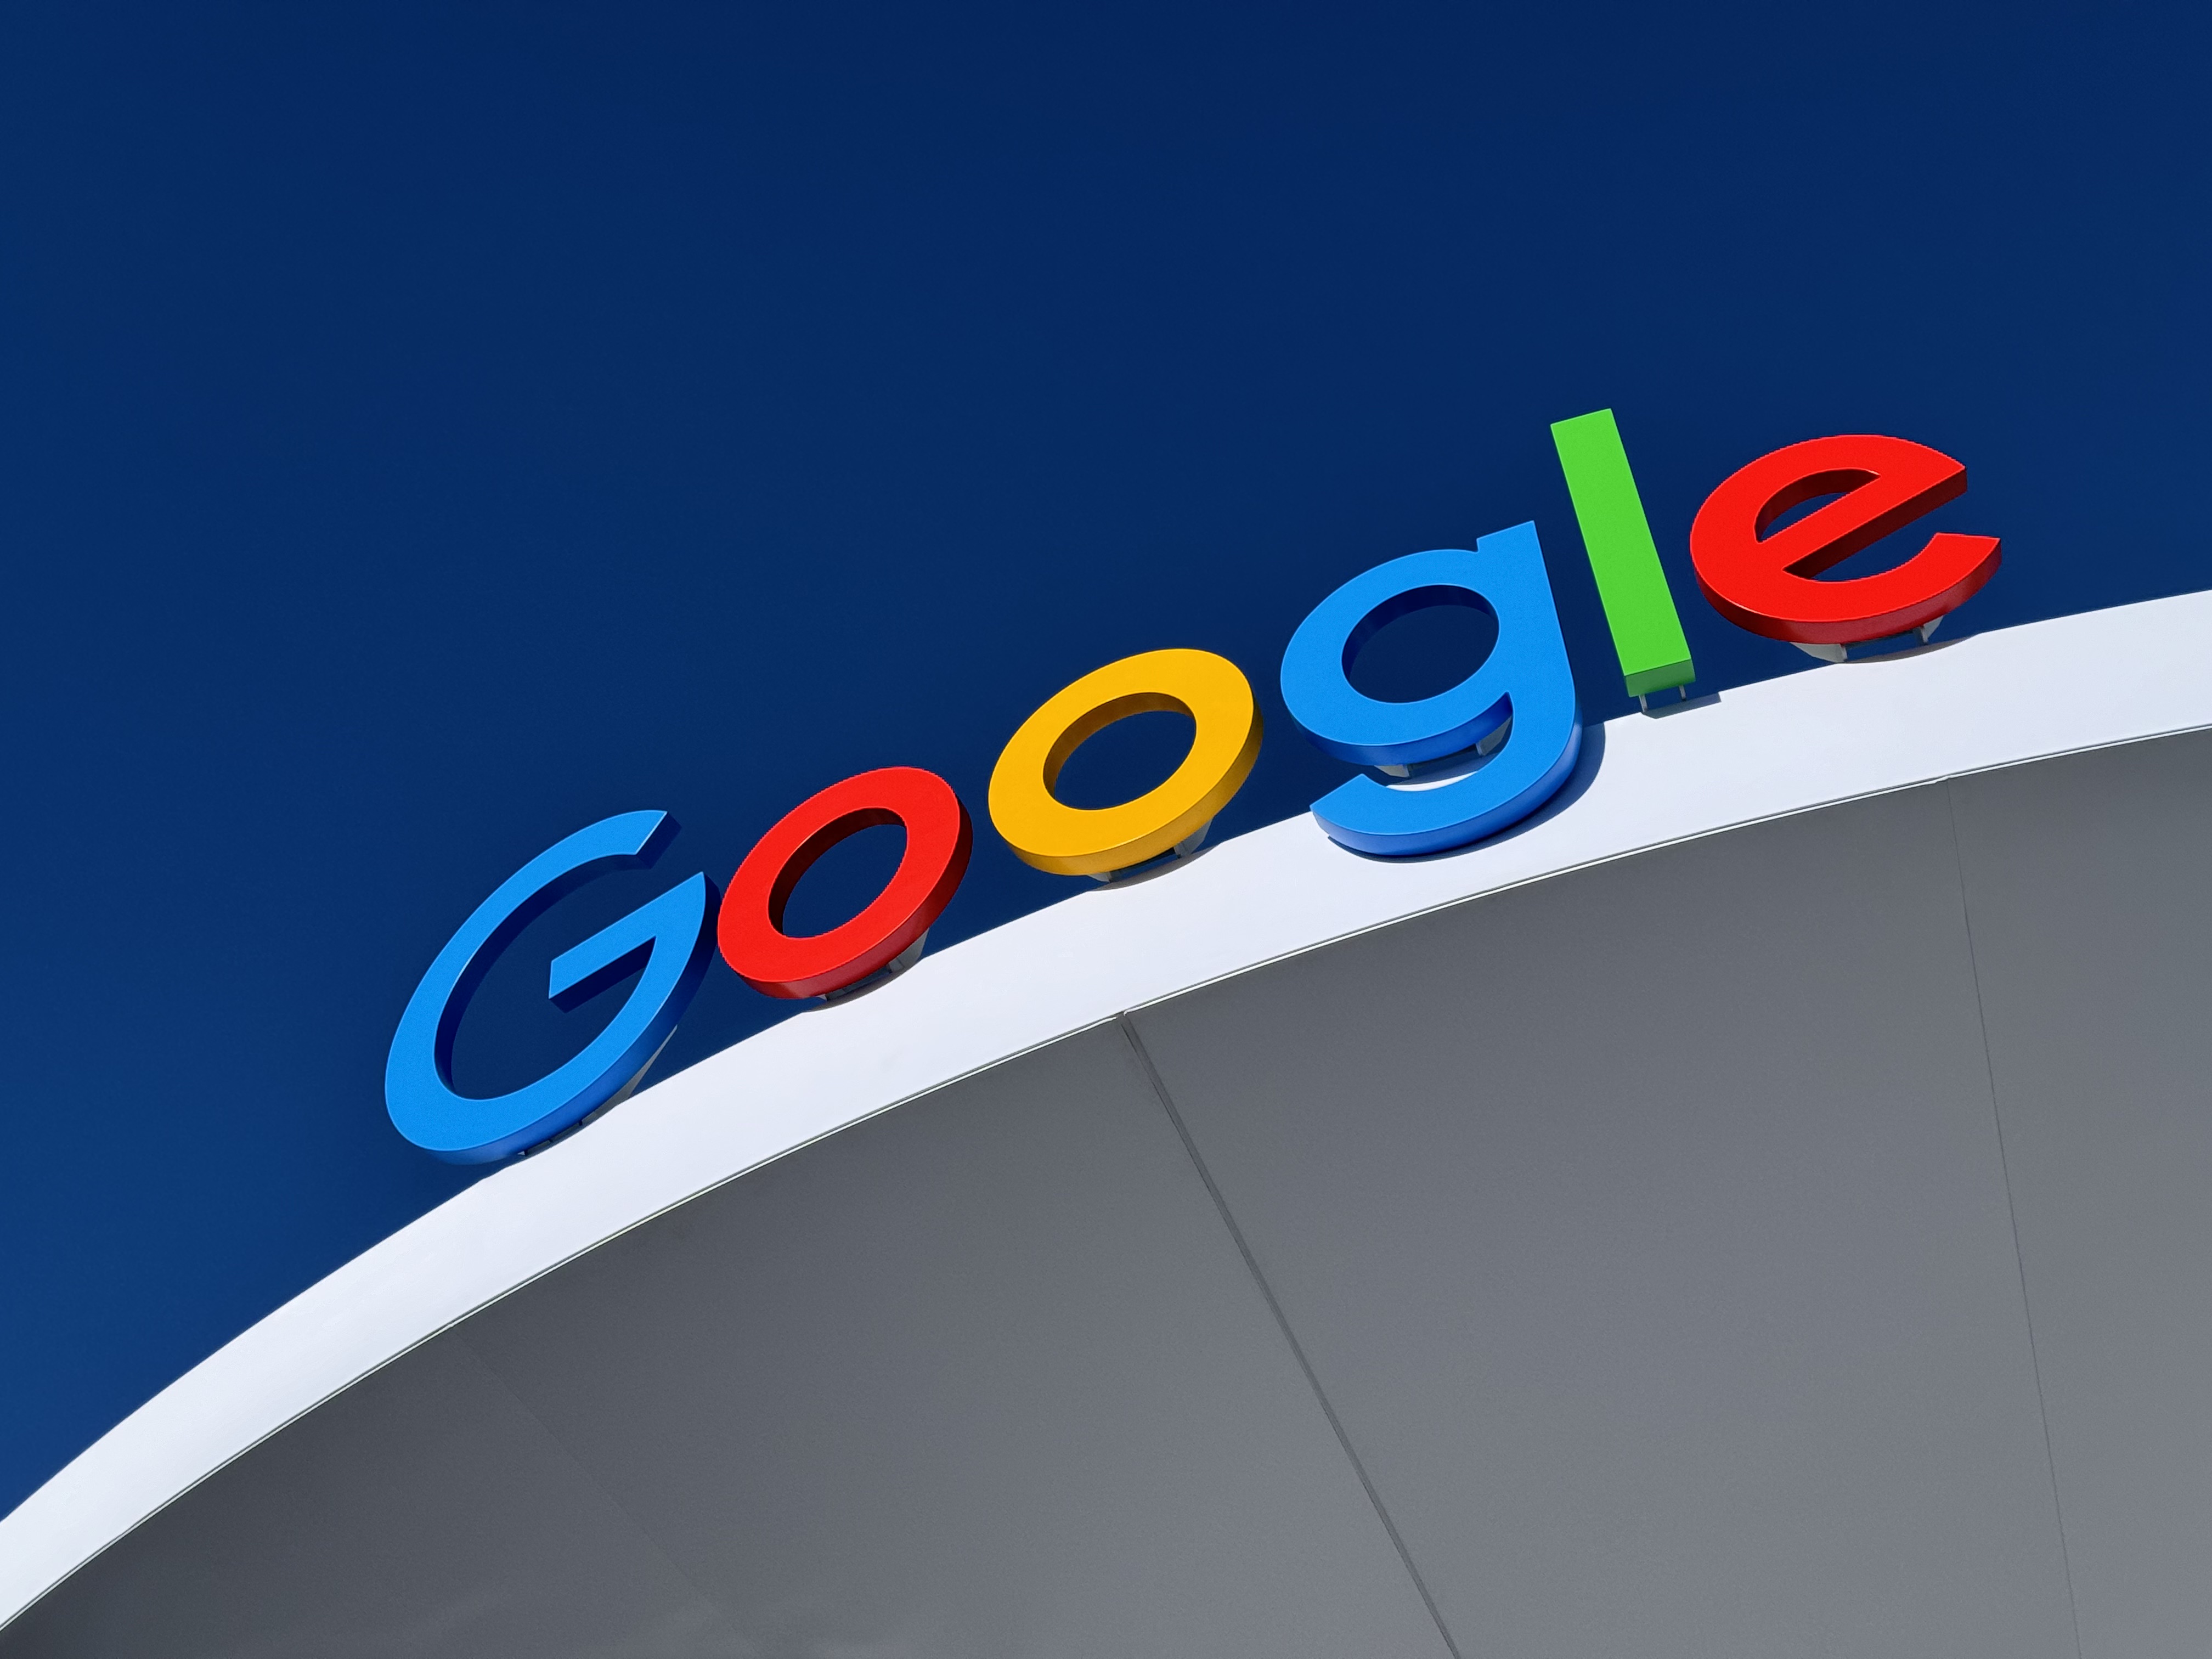 علامت لوگوی گوگل در بالای ساختمان.